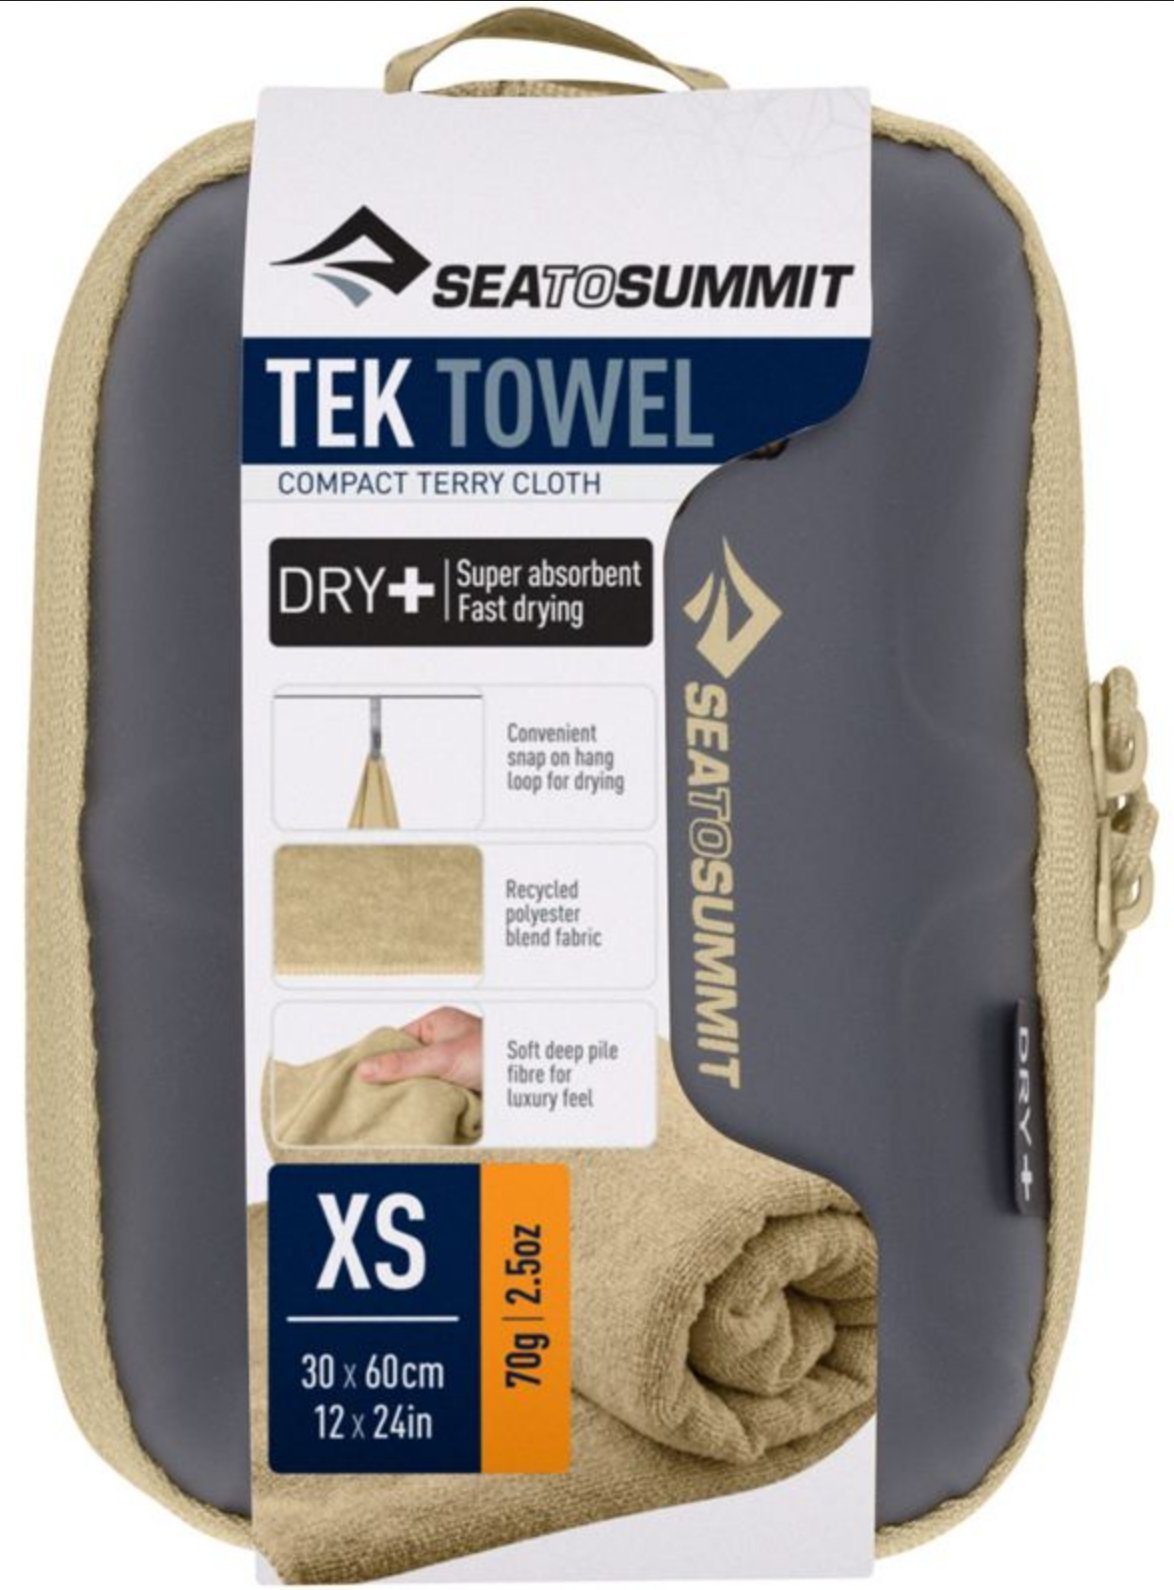 Desert Towel Tek to Handtücher summit sea DE